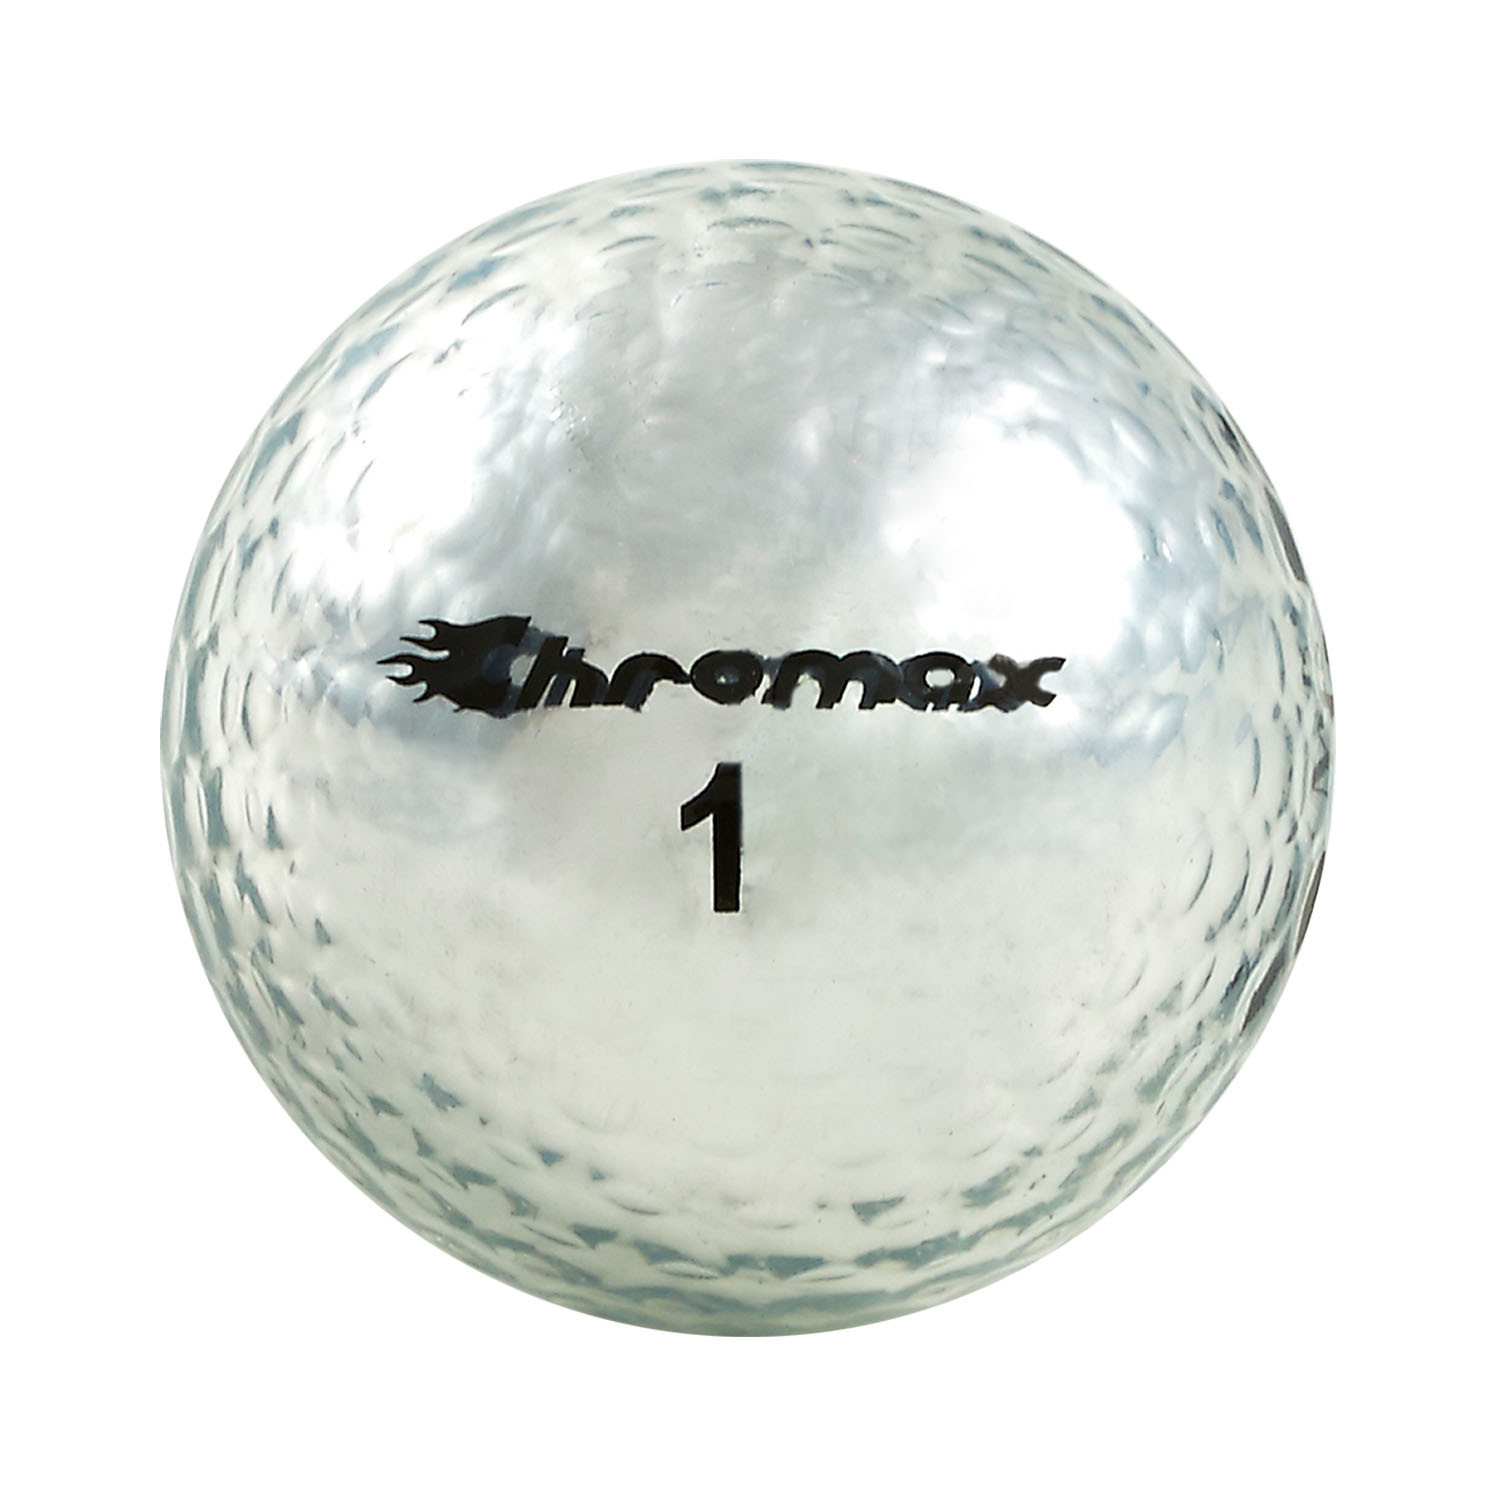 Metallic M5 Golf Balls 6 Ball Pack Gold Chromax Golf Touch Of